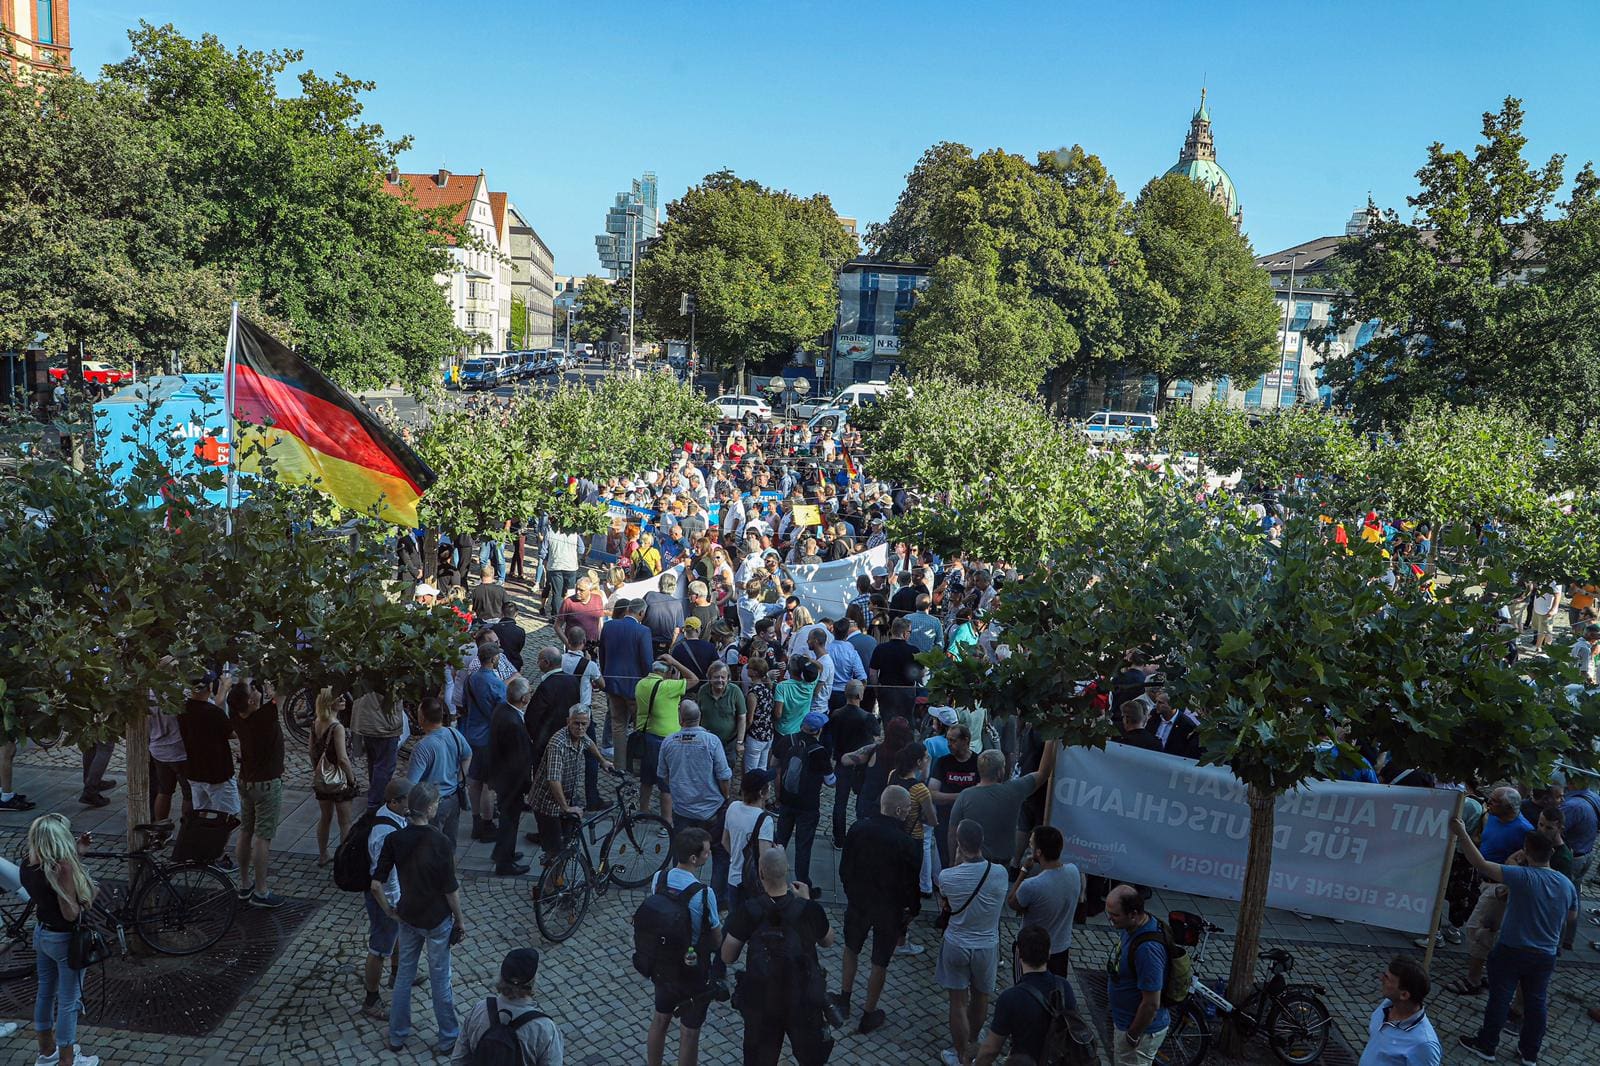 Demo "Es Reicht" – August 2019 in Hannover